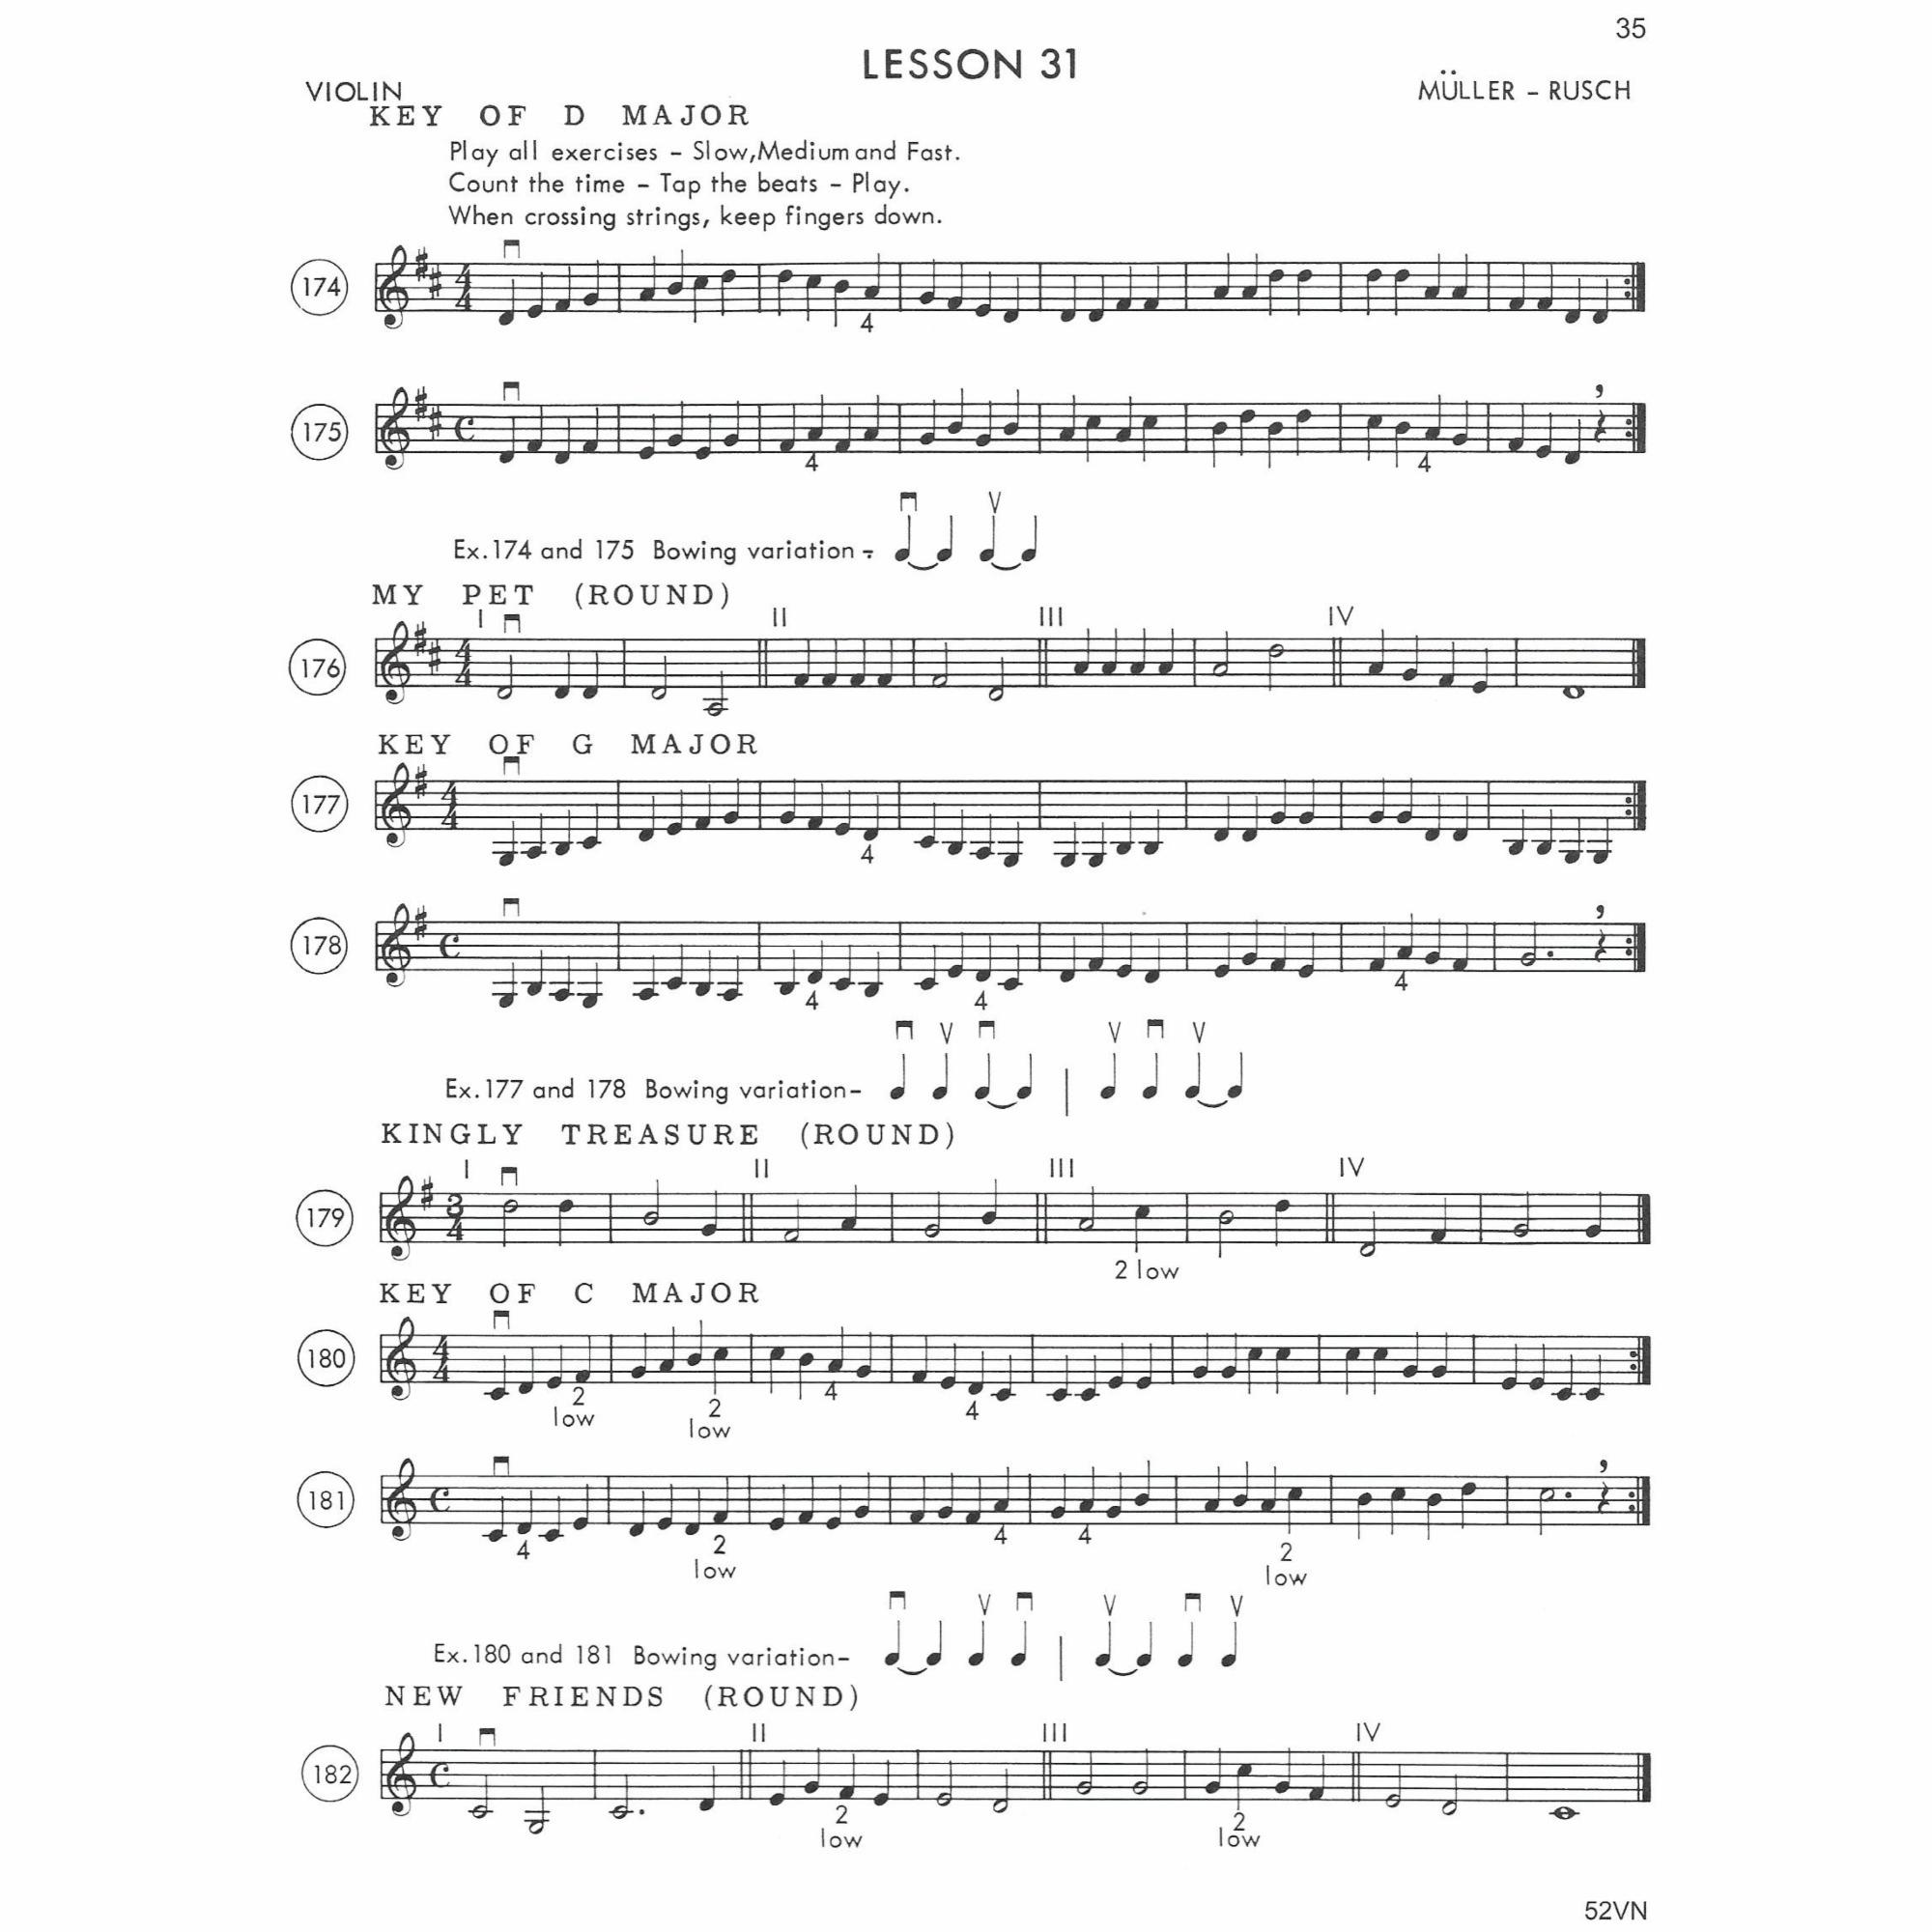 Sample: Violin (Pg. 2/35)